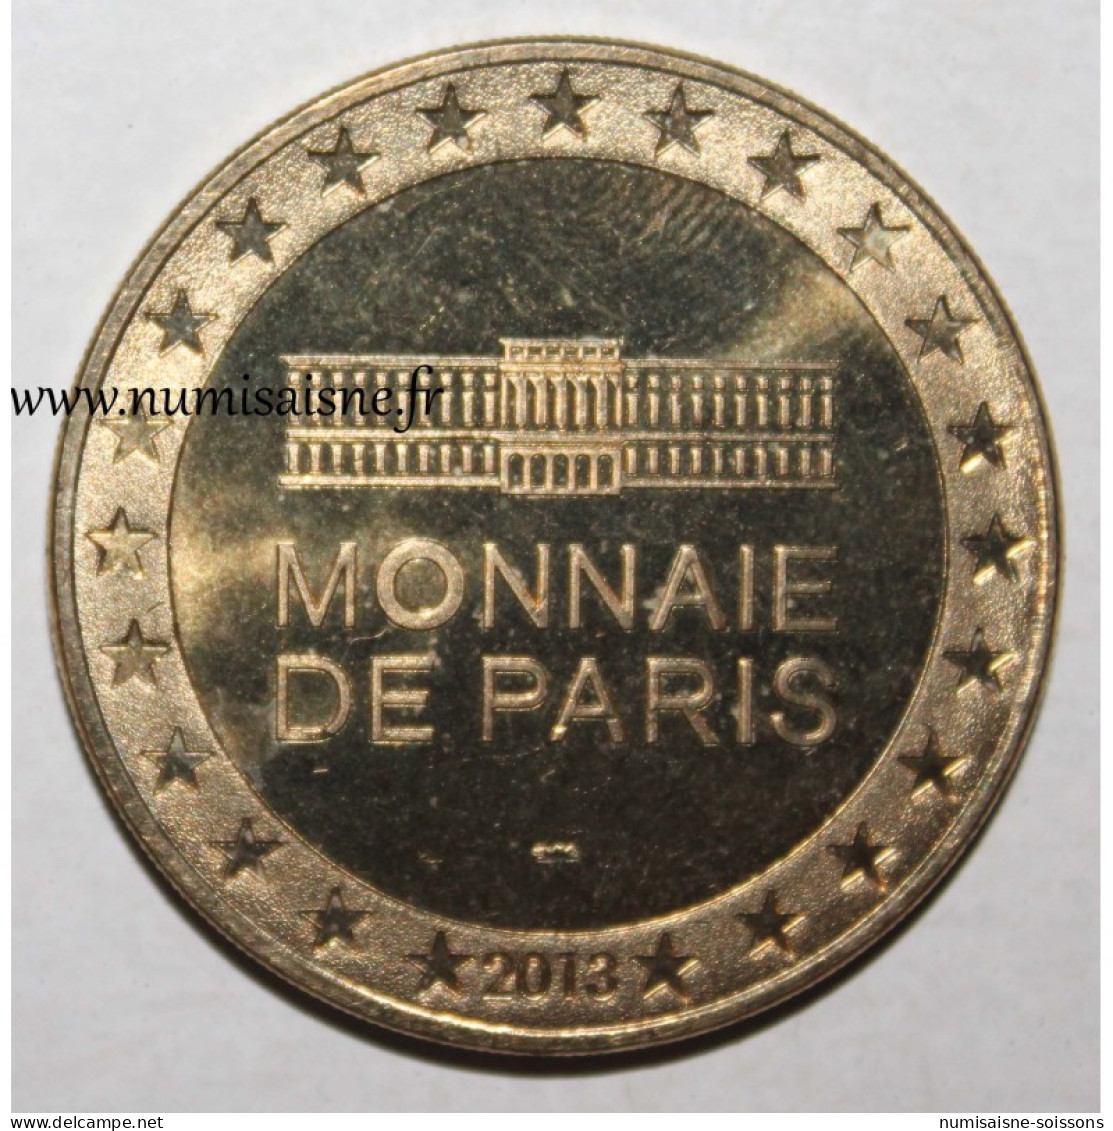 75 - PARIS - Troisième Paradis - Michelangelo Pistoletto - Monnaie De Paris - 2013 - 2013